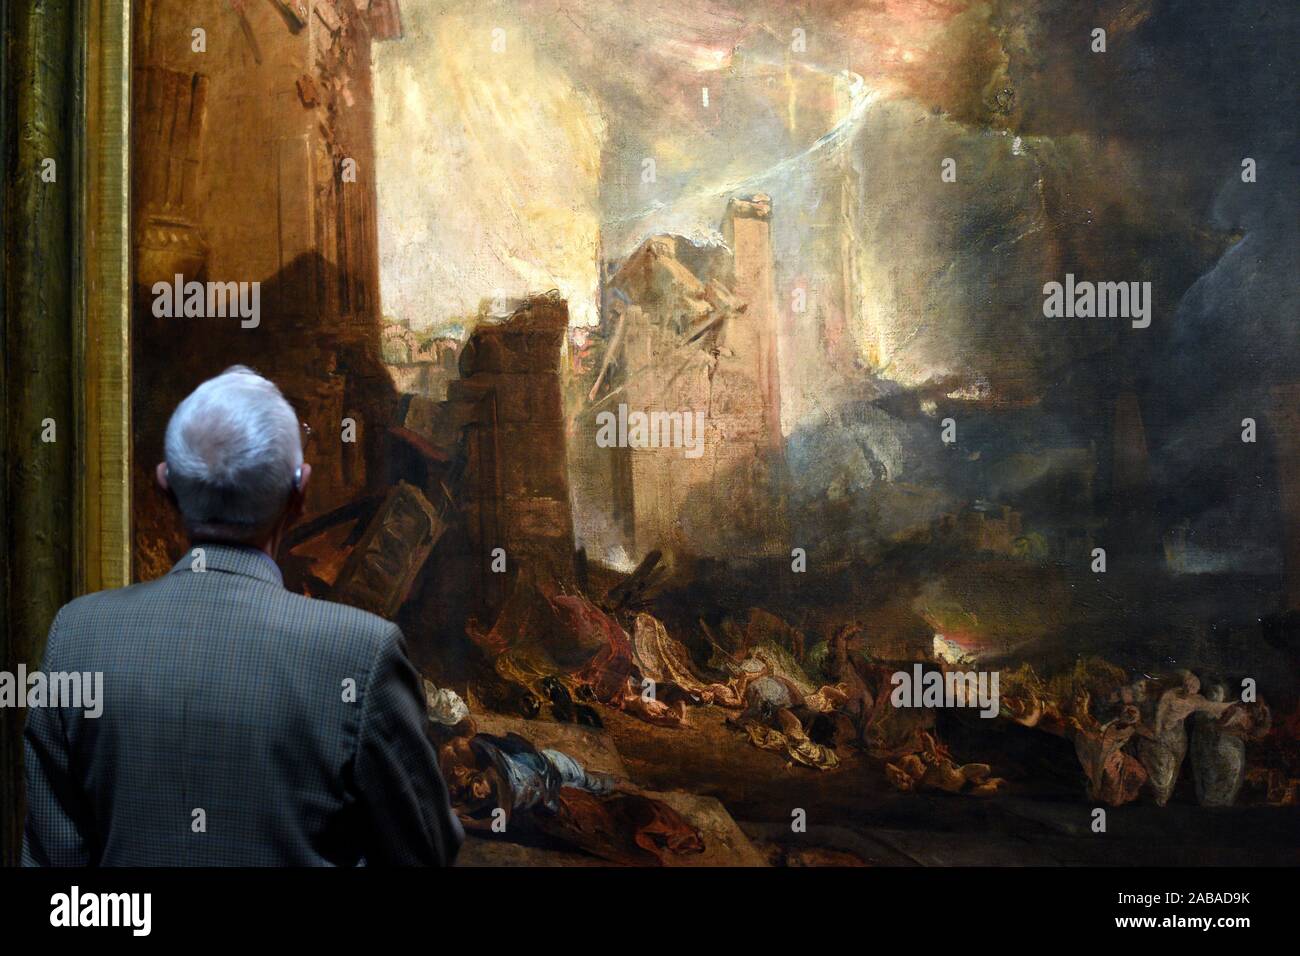 Visitante mirando la pintura de Joseph Mallord William Turner, la destrucción de Sodoma,1805,oleo sobre lienzo, exposición especial en Luxemburgo Foto de stock